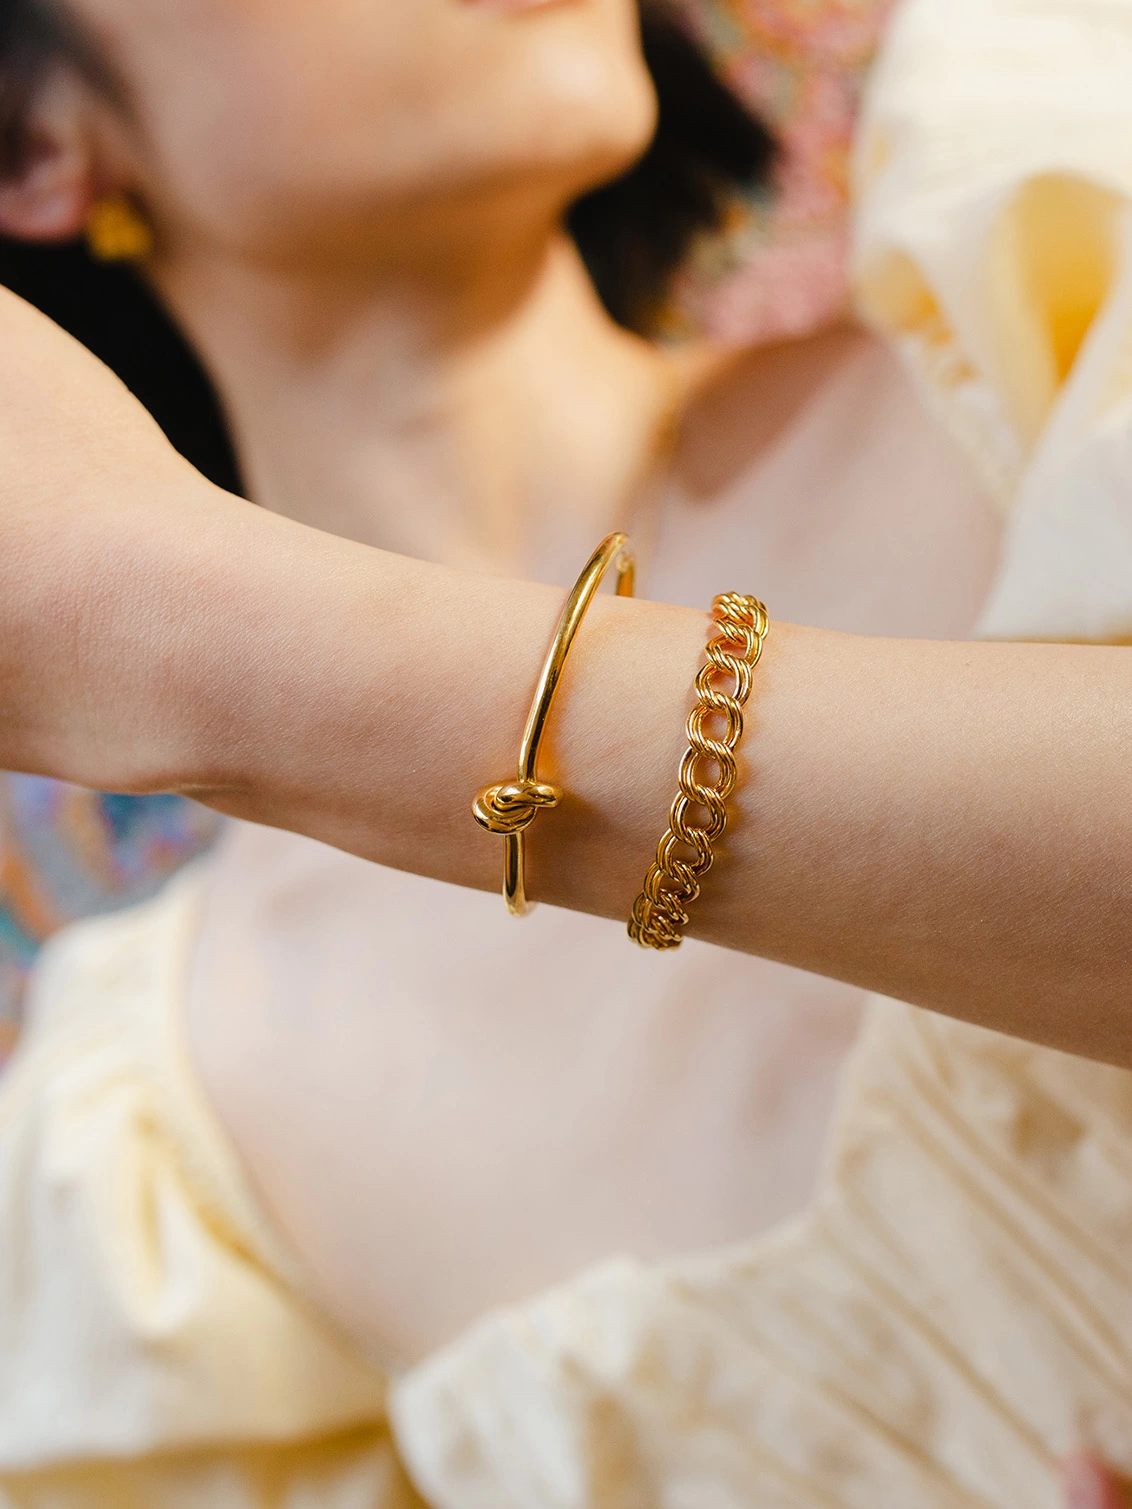 Knot Bangle Bracelet | Gold Plated Stainless Steel | Pearl bracelet jewelry,  Knot bangle, Gold bangle bracelet